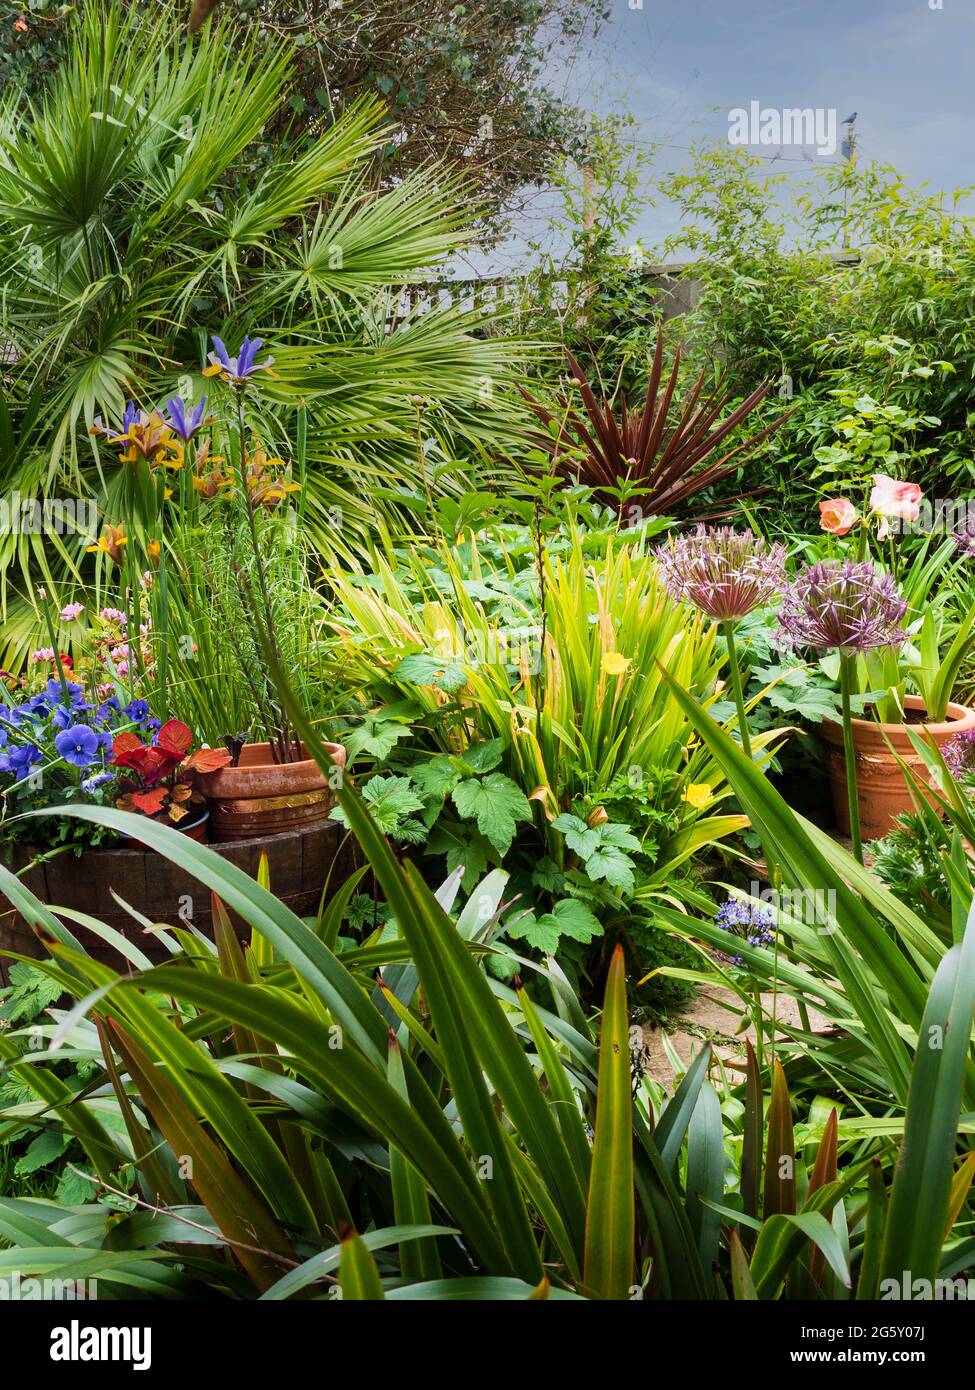 Blick auf einen Teil eines exotisch gestalteten Gartens in Plymouth, Devon, Großbritannien, Anfang Juni. Stockfoto